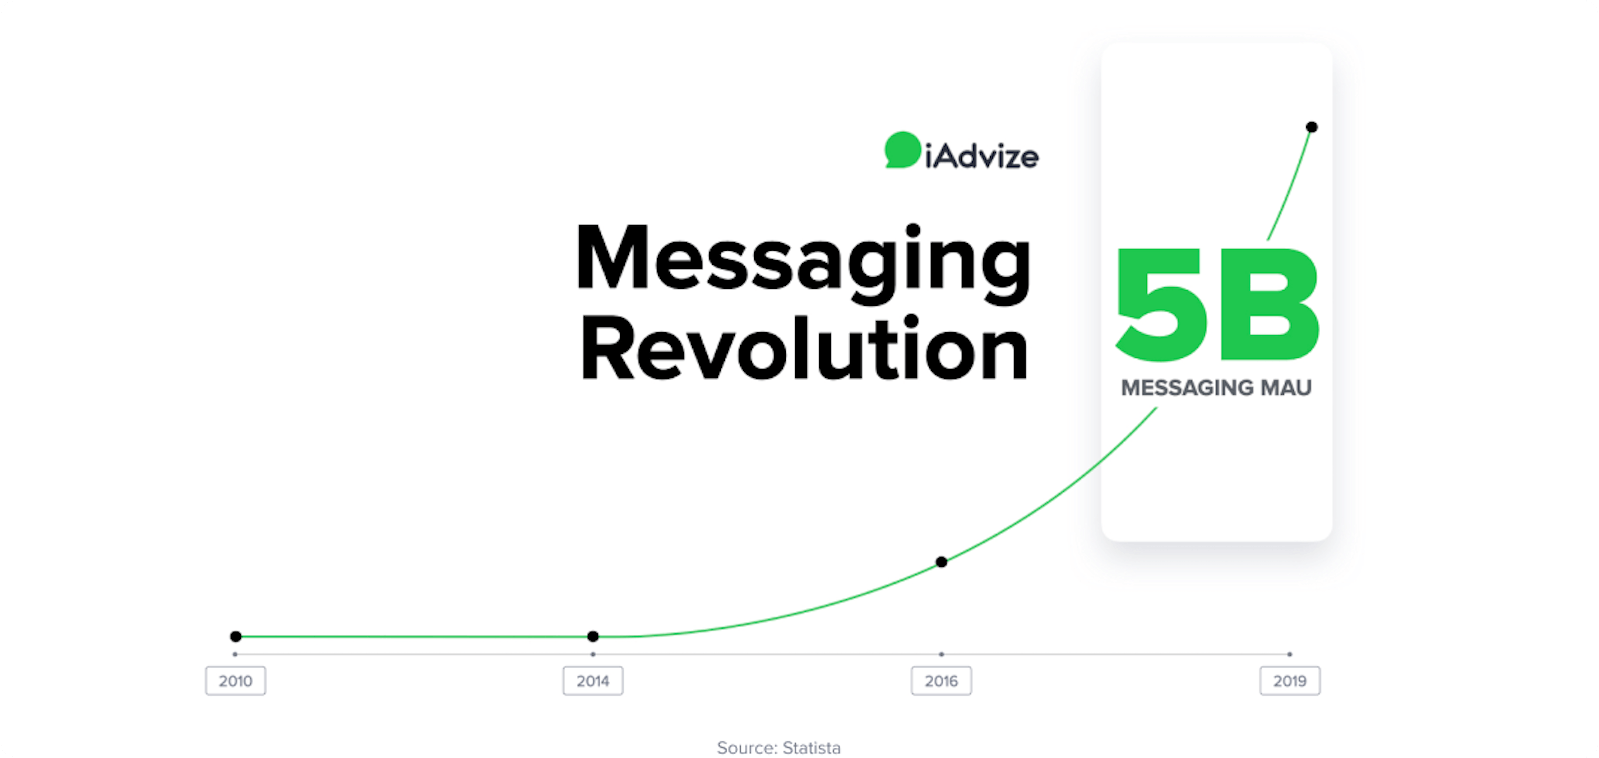 Messaging Revolution